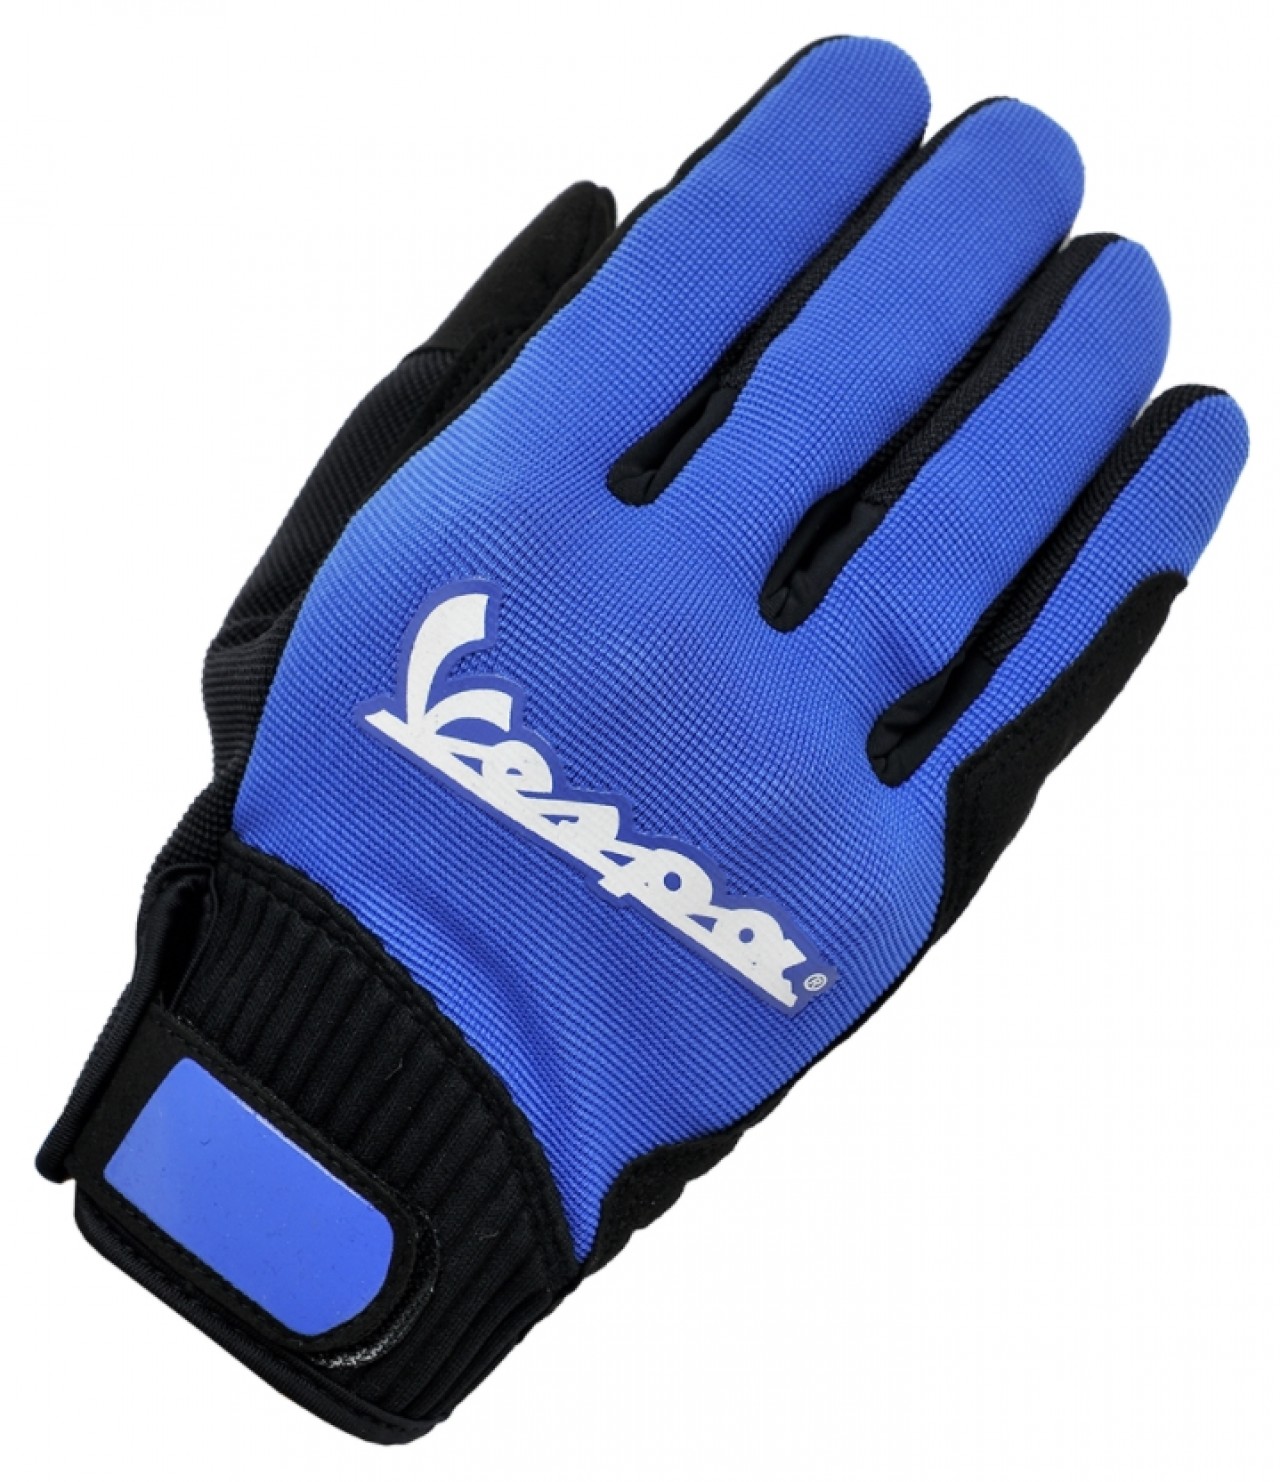 Boodschapper Geestig Vast en zeker Vespa Handschoenen Kleur Textiel Blauw | Handschoenen | Kleding | Piaggio- Vespa Online Shop by RWN